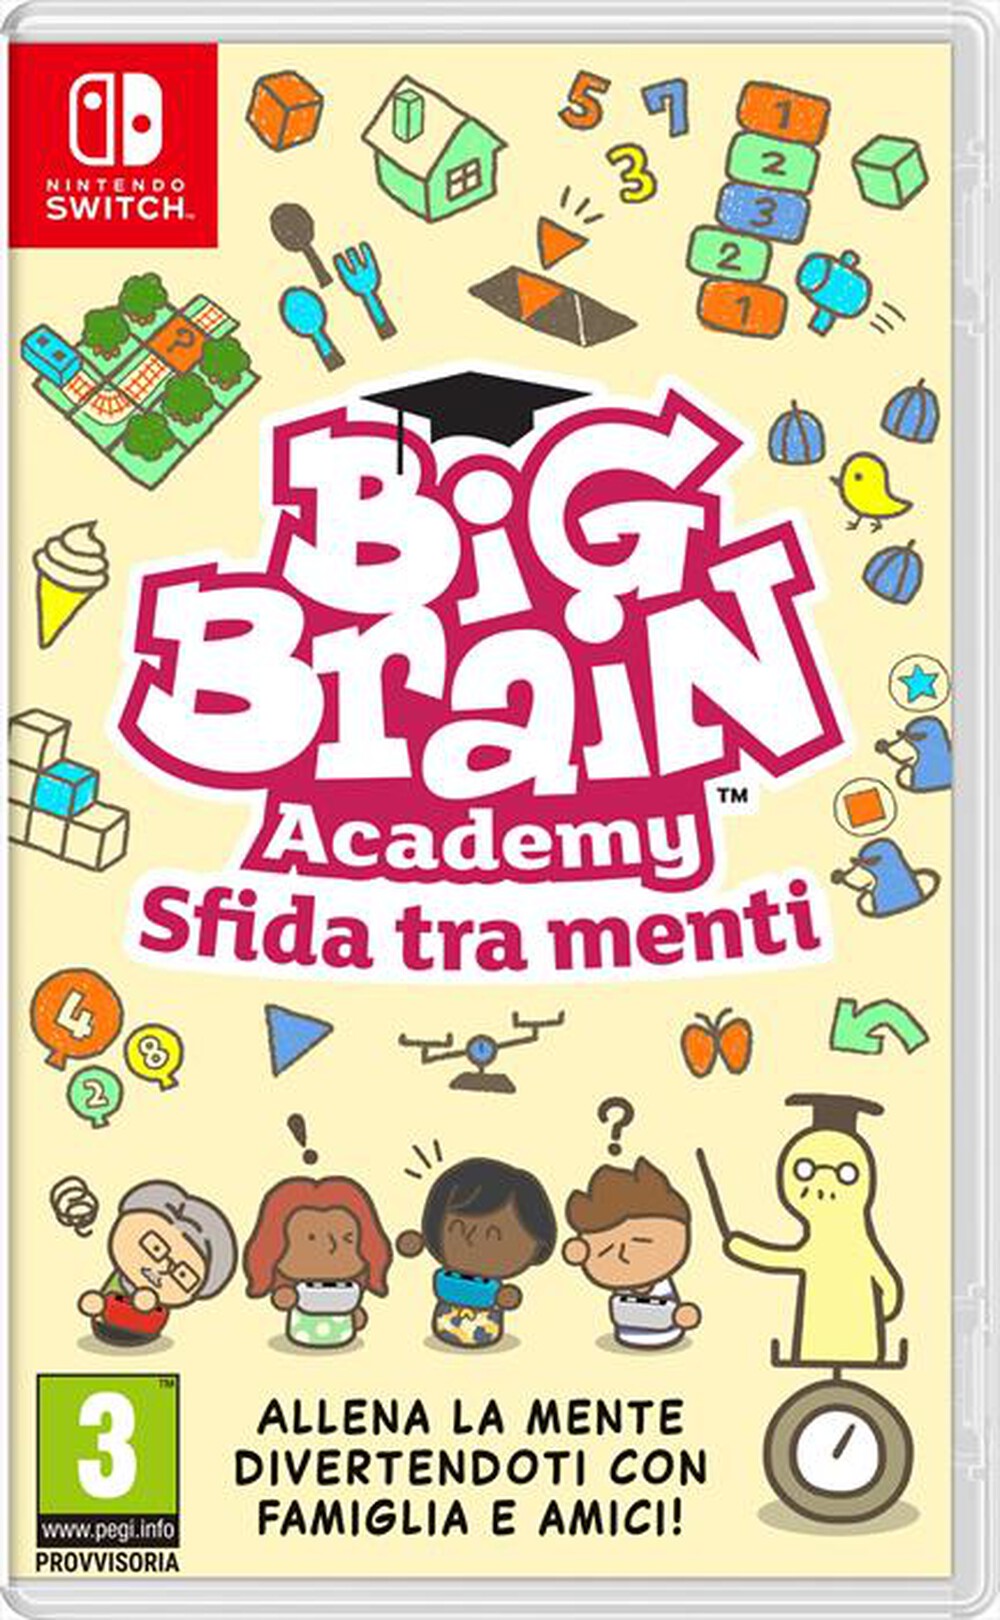 "NINTENDO - Big Brain Academy: Sfida tra menti"